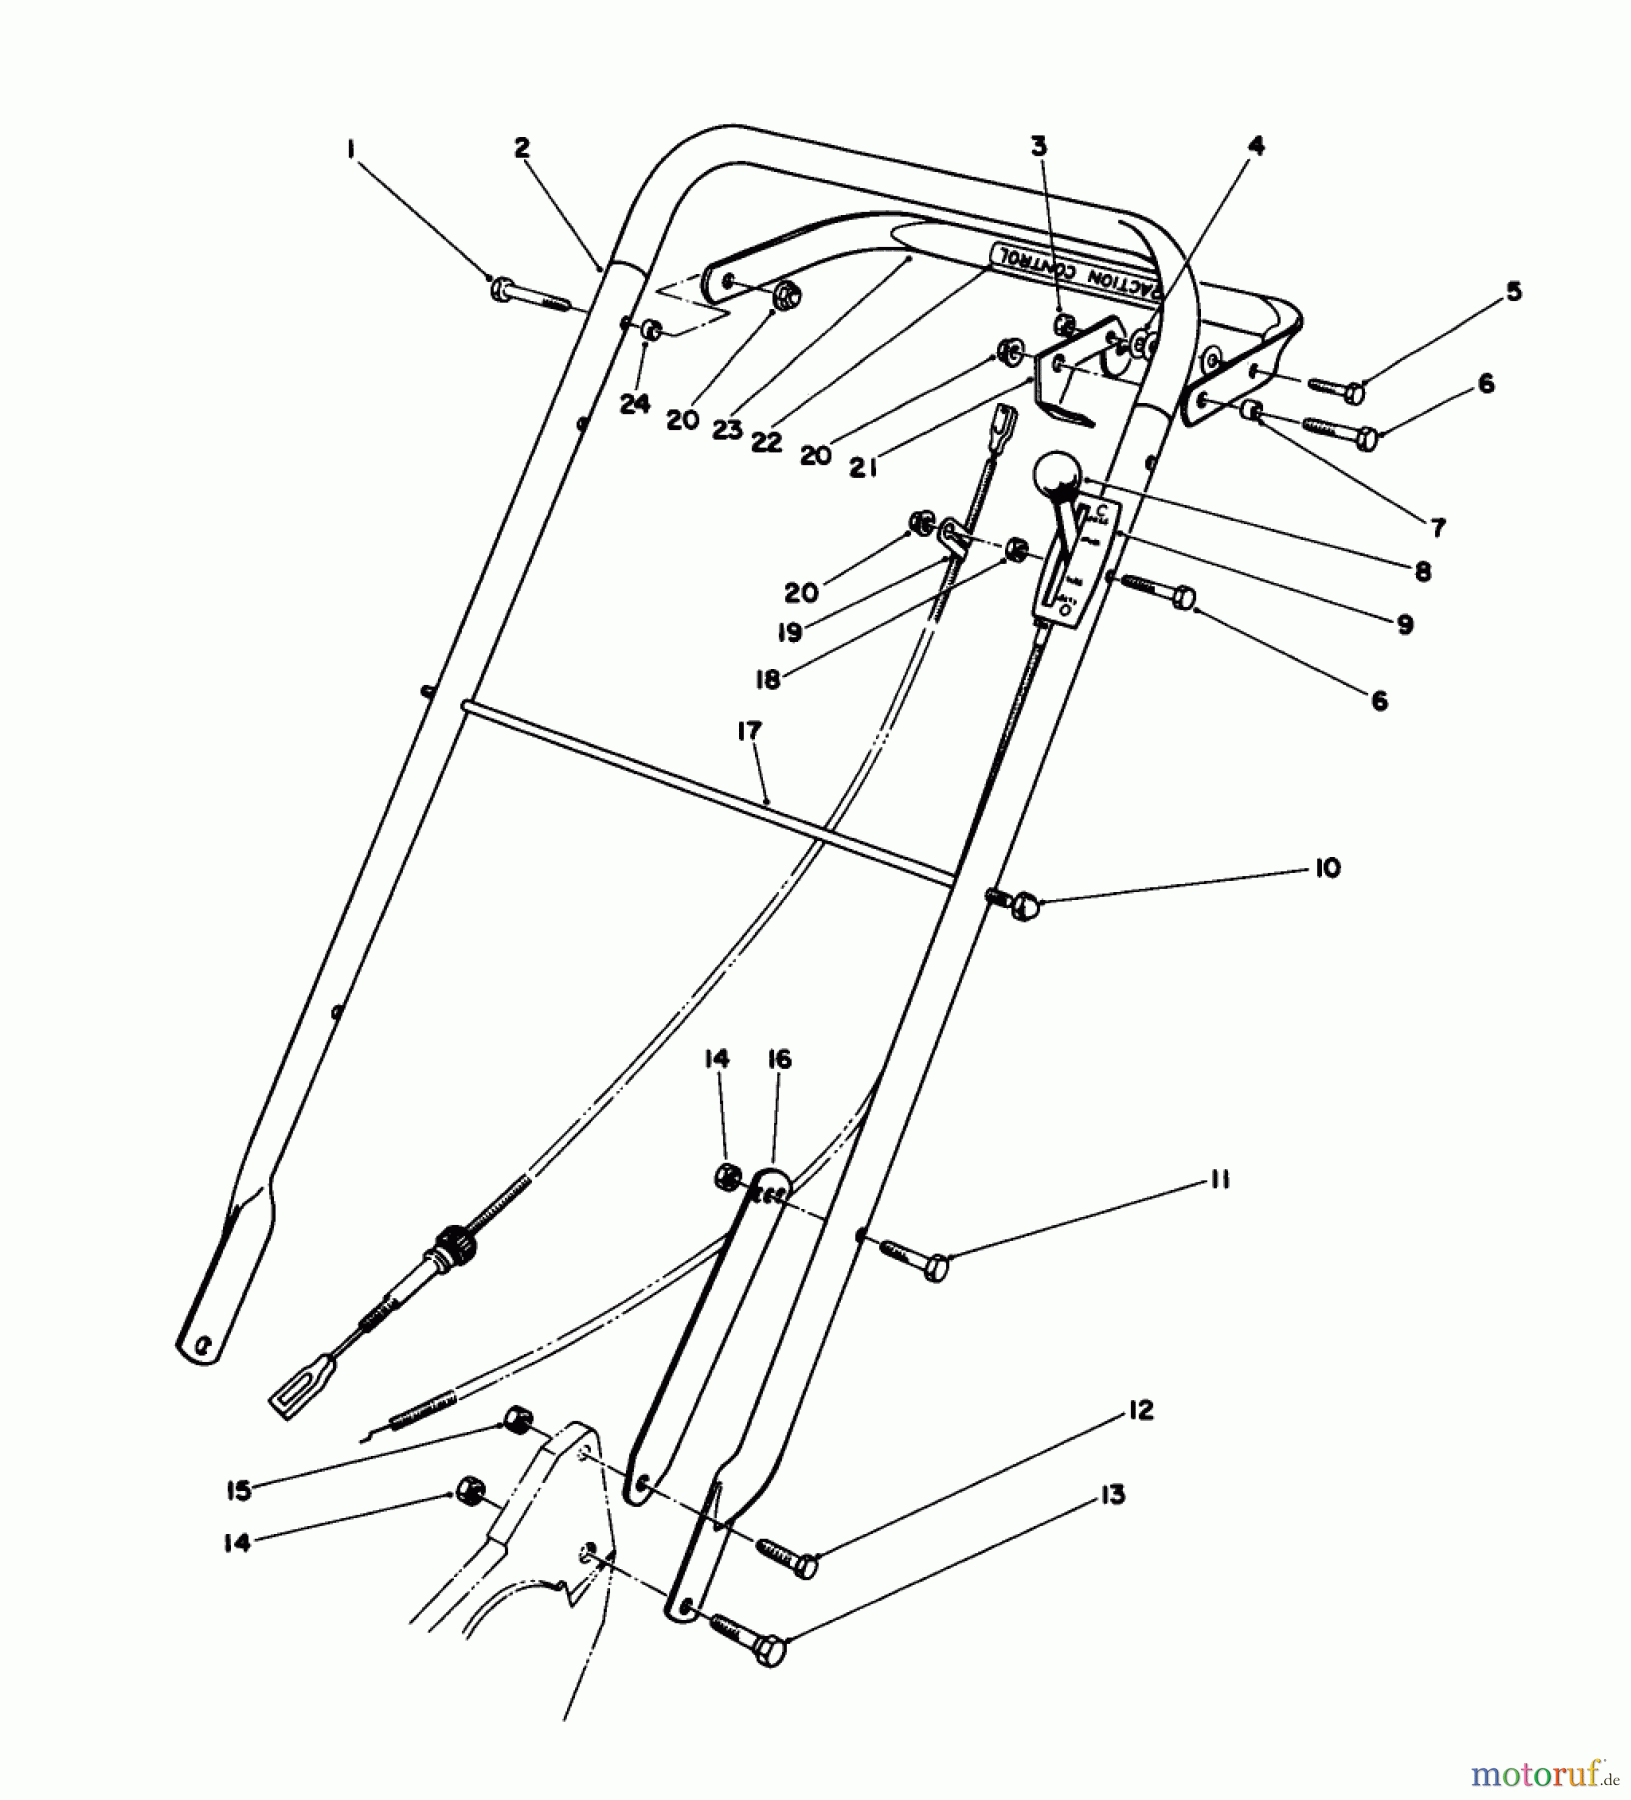  Toro Neu Mowers, Walk-Behind Seite 2 22035 - Toro Lawnmower, 1986 (6000001-6999999) HANDLE ASSEMBLY (MODEL 22035)